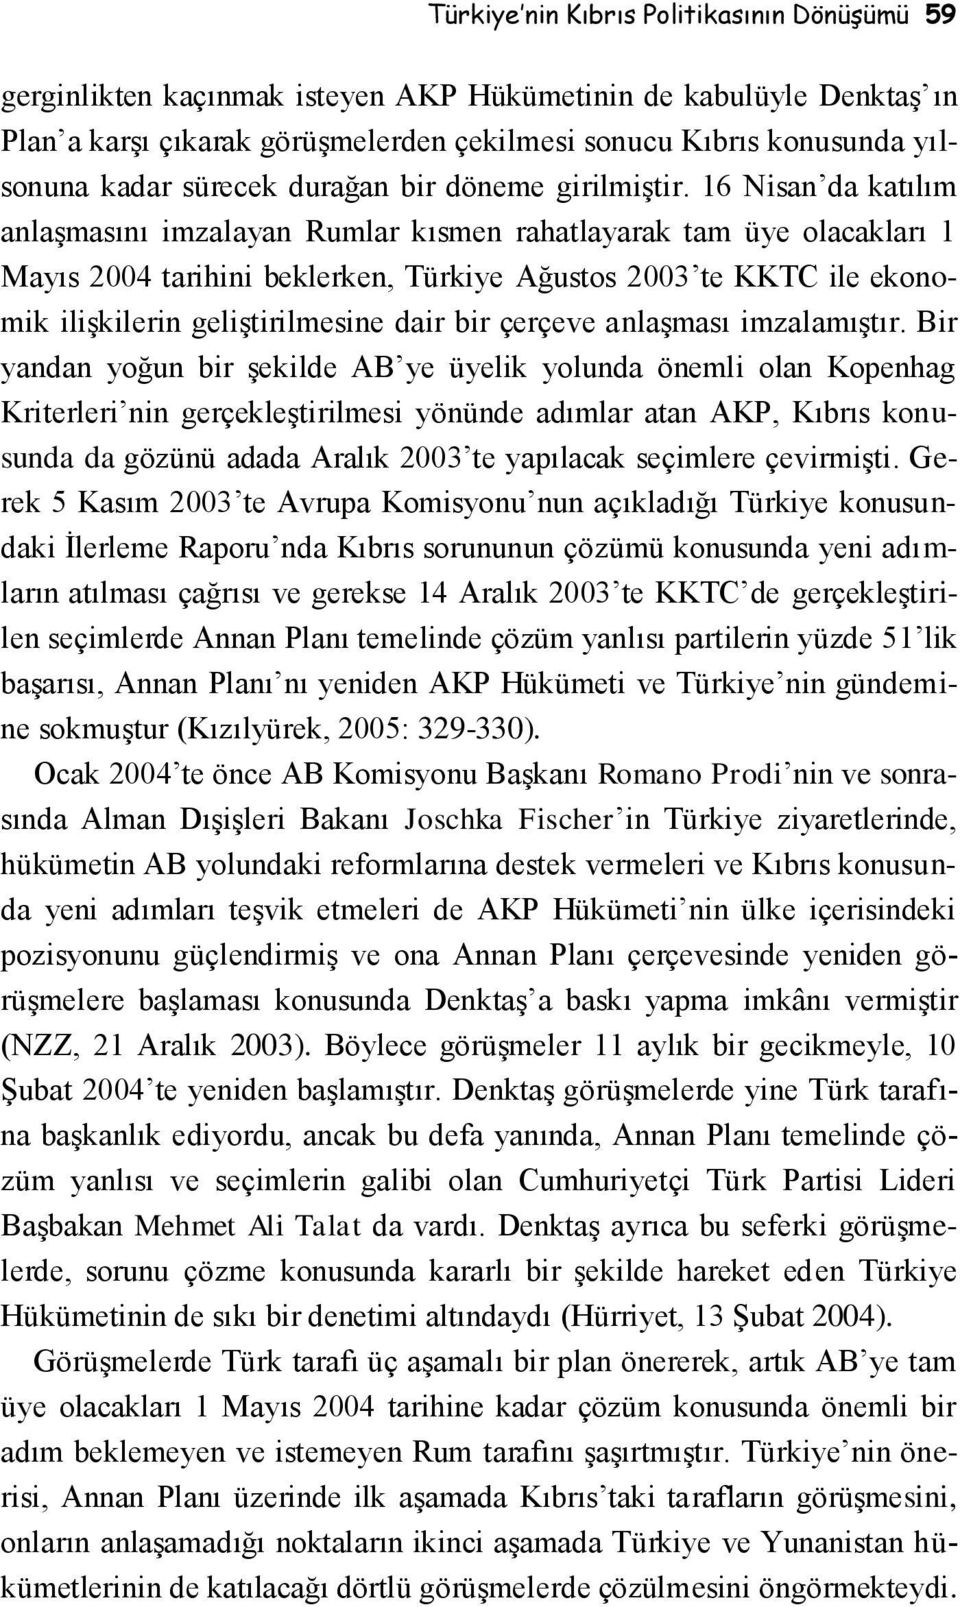 16 Nisan da katılım anlaşmasını imzalayan Rumlar kısmen rahatlayarak tam üye olacakları 1 Mayıs 2004 tarihini beklerken, Türkiye Ağustos 2003 te KKTC ile ekonomik ilişkilerin geliştirilmesine dair